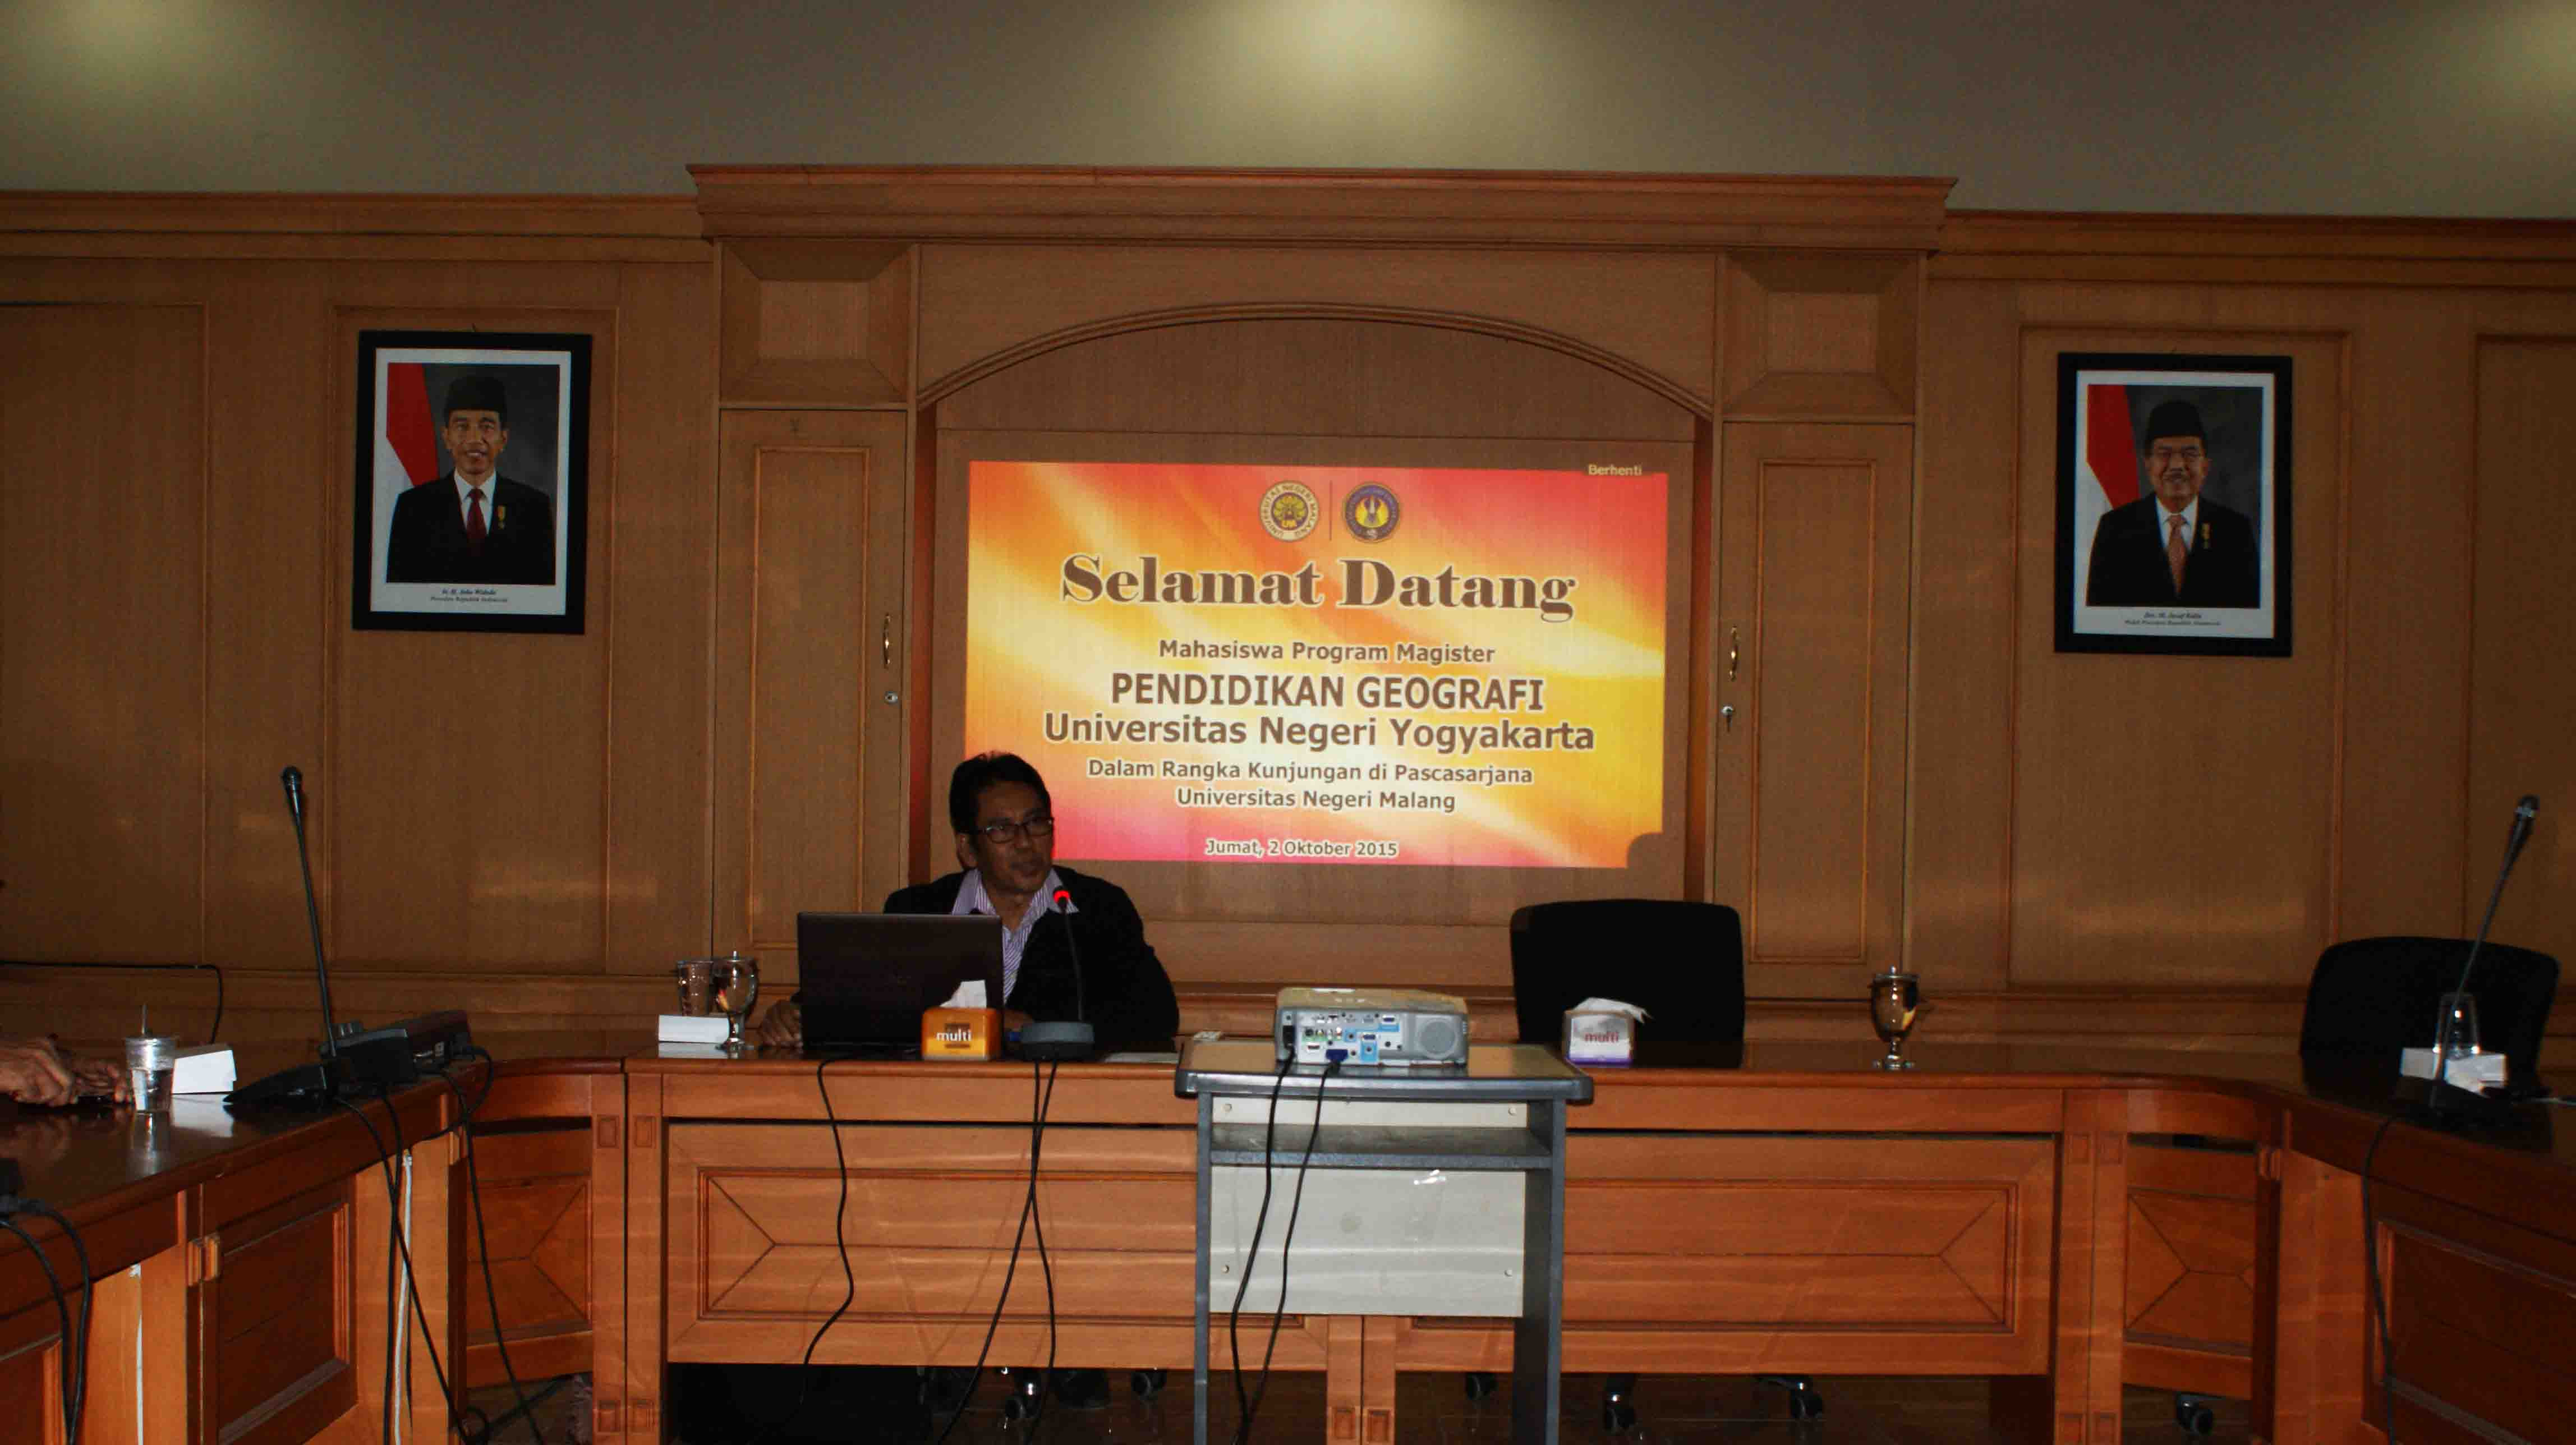 Magister Pendidikan Geografi Universitas Negeri Yogyakarta UNY pada hari Jumat 02 Oktober 2015 bertempat di Gedung H1 Ruang 226 Pascasarjana UM